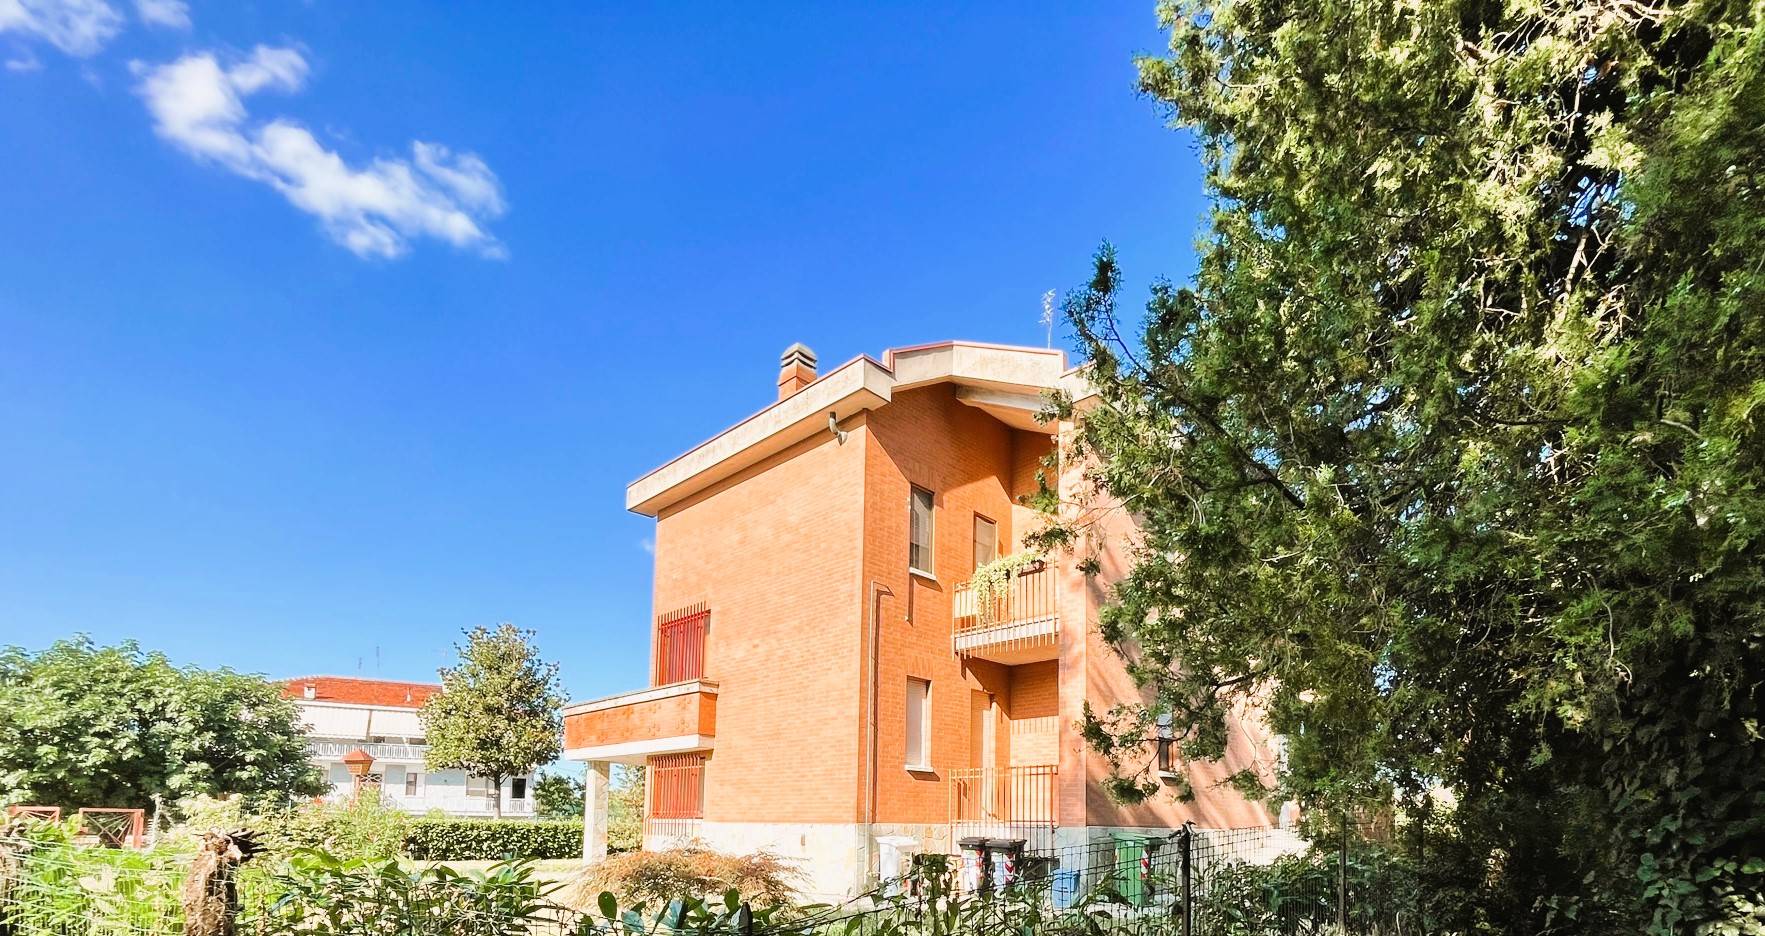 Villa Bifamiliare in vendita a Chieri, 8 locali, prezzo € 330.000 | PortaleAgenzieImmobiliari.it